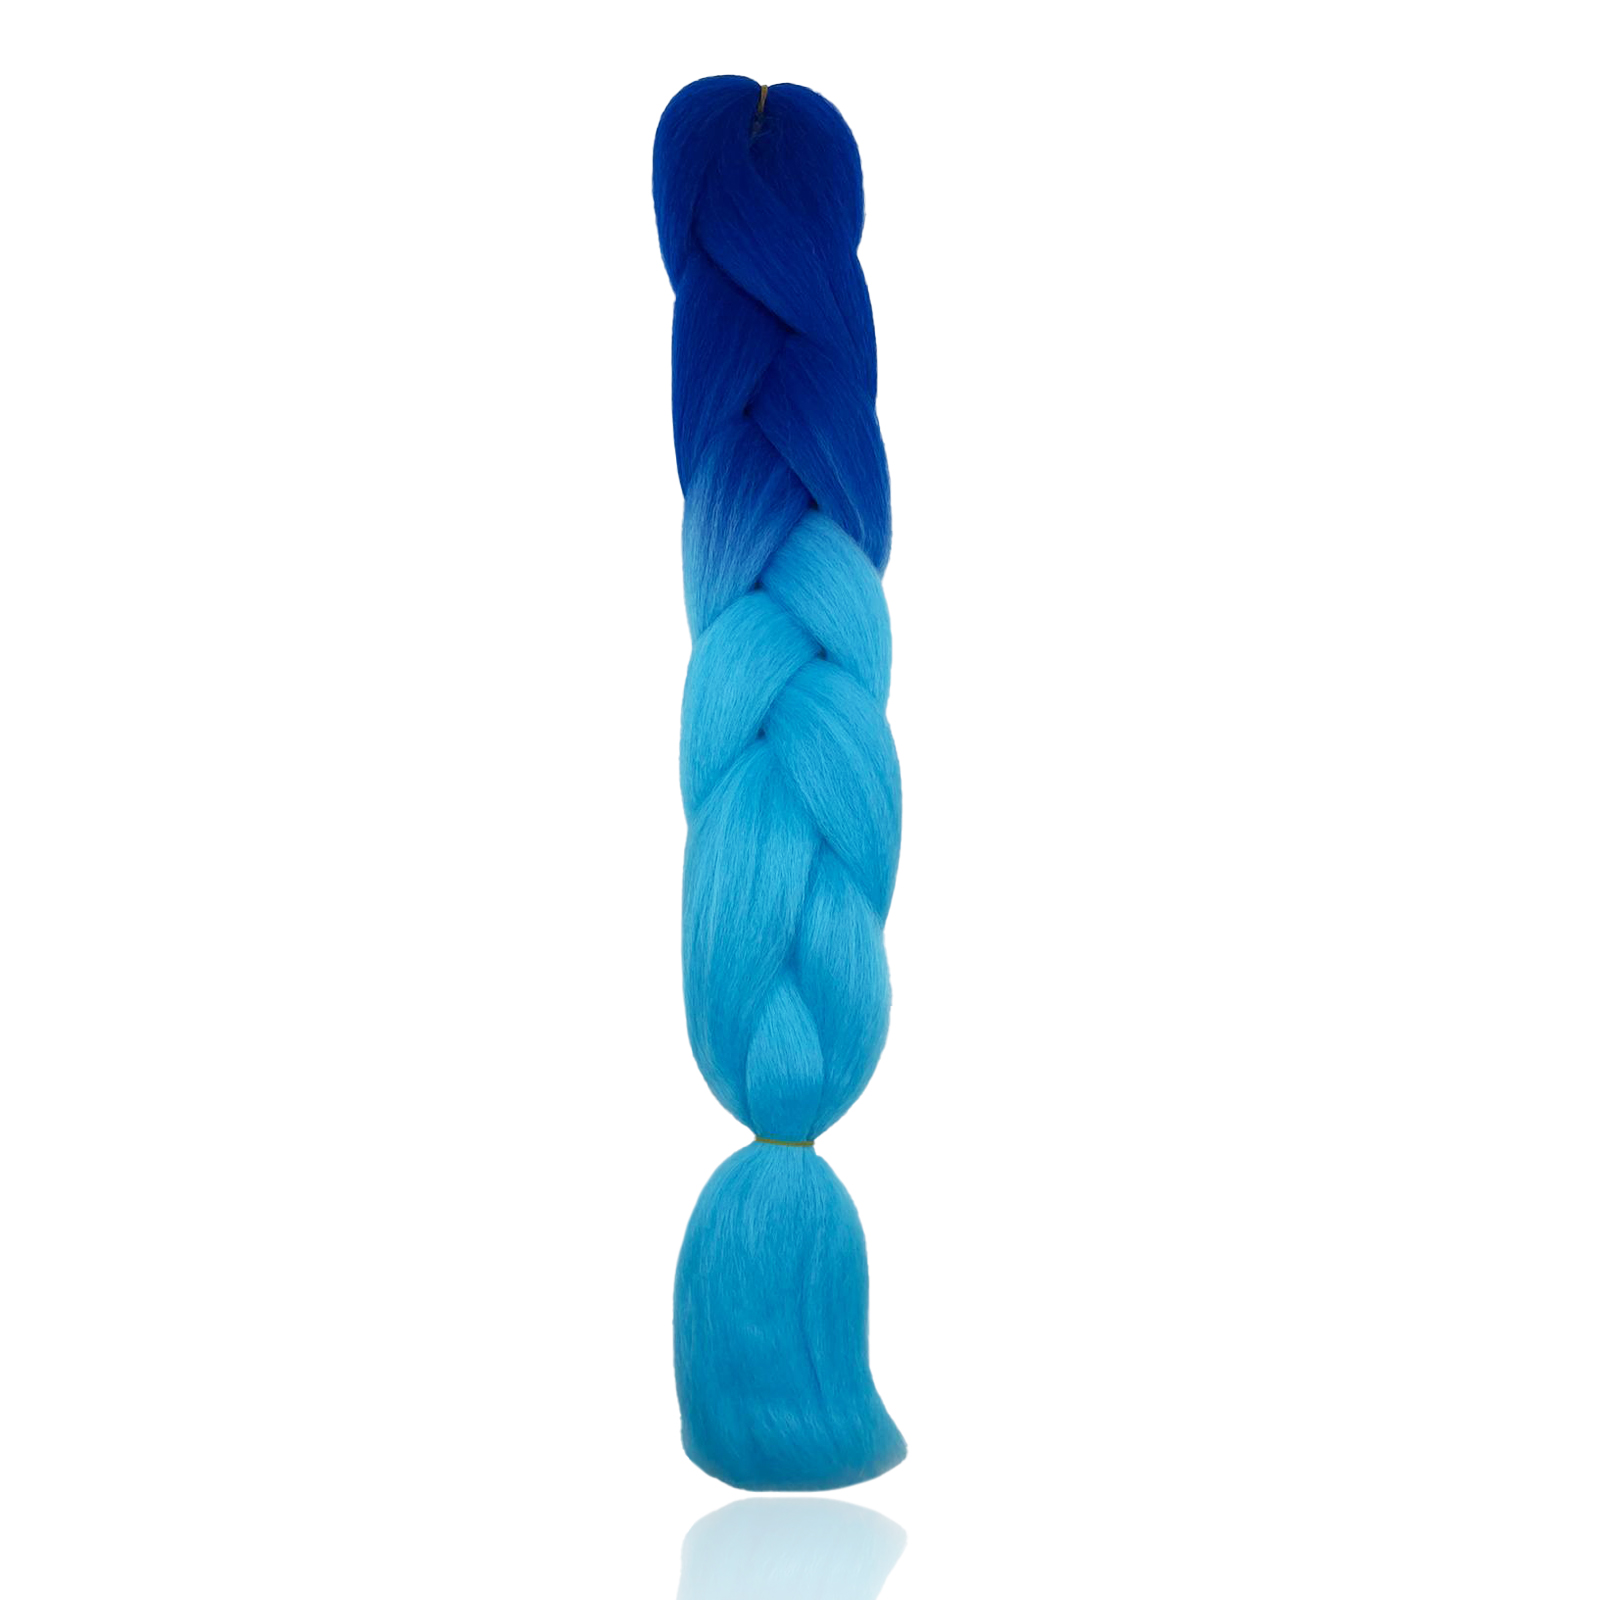 Канекалон Market toys lab накладные волосы для плетения кос, сине-голубой проволока для плетения d 1 5мм намотка 5м